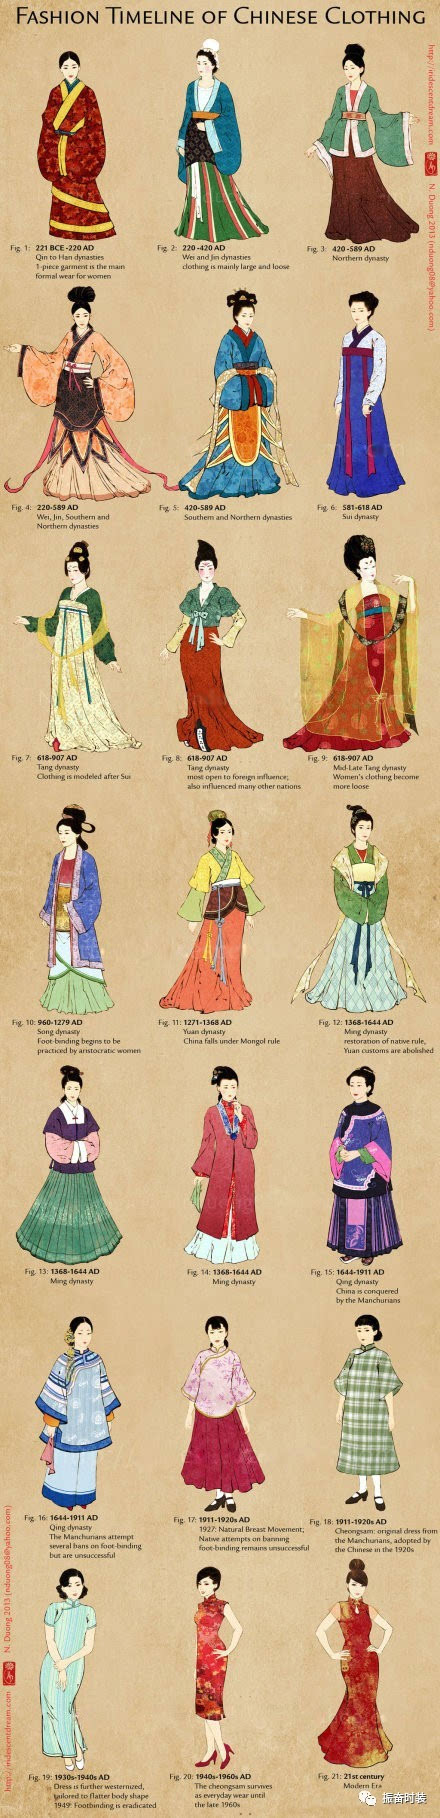 一张图看遍中国历代女子服饰演变史.你最喜欢哪个朝代的? 先秦两汉